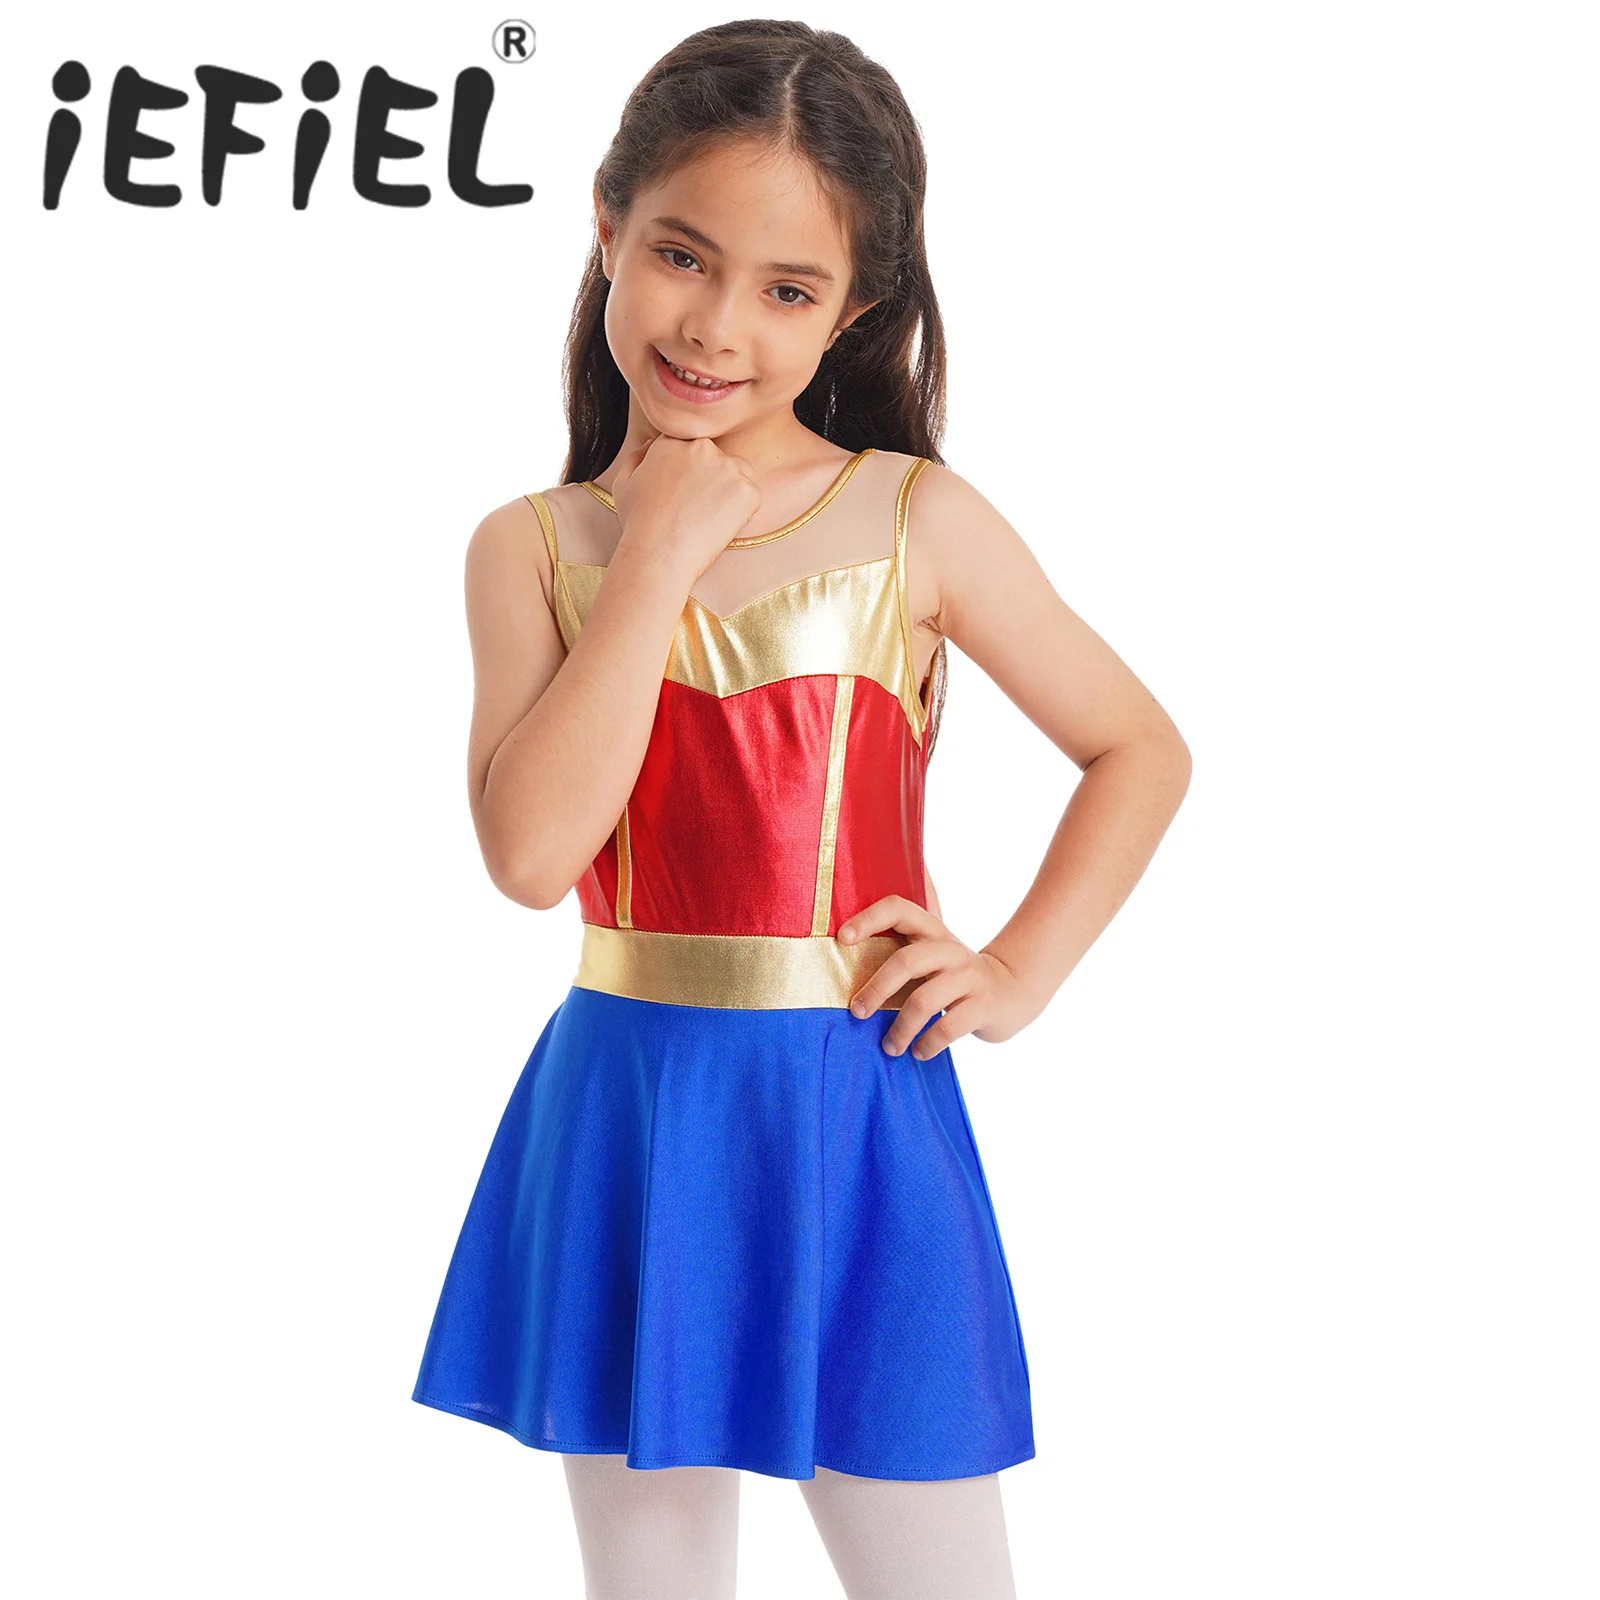 

Детский костюм героя для девочек, косплей на Хэллоуин, одежда без рукавов, с металлической сеткой, для карнавала, тематической вечевечерние, для ролевых игр